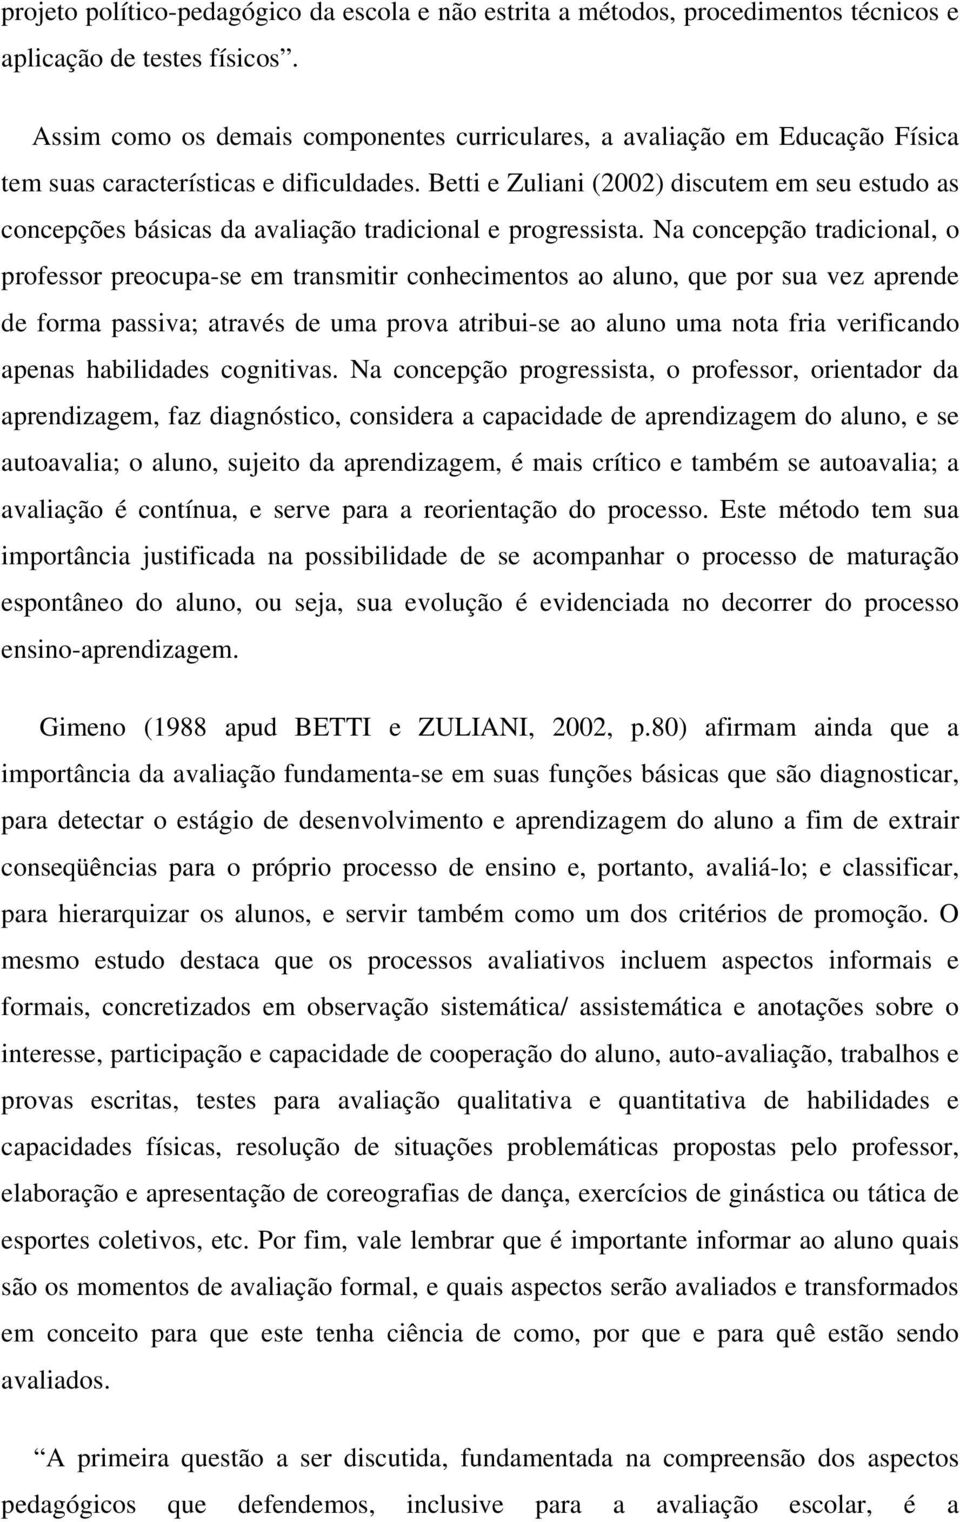 Betti e Zuliani (2002) discutem em seu estudo as concepções básicas da avaliação tradicional e progressista.